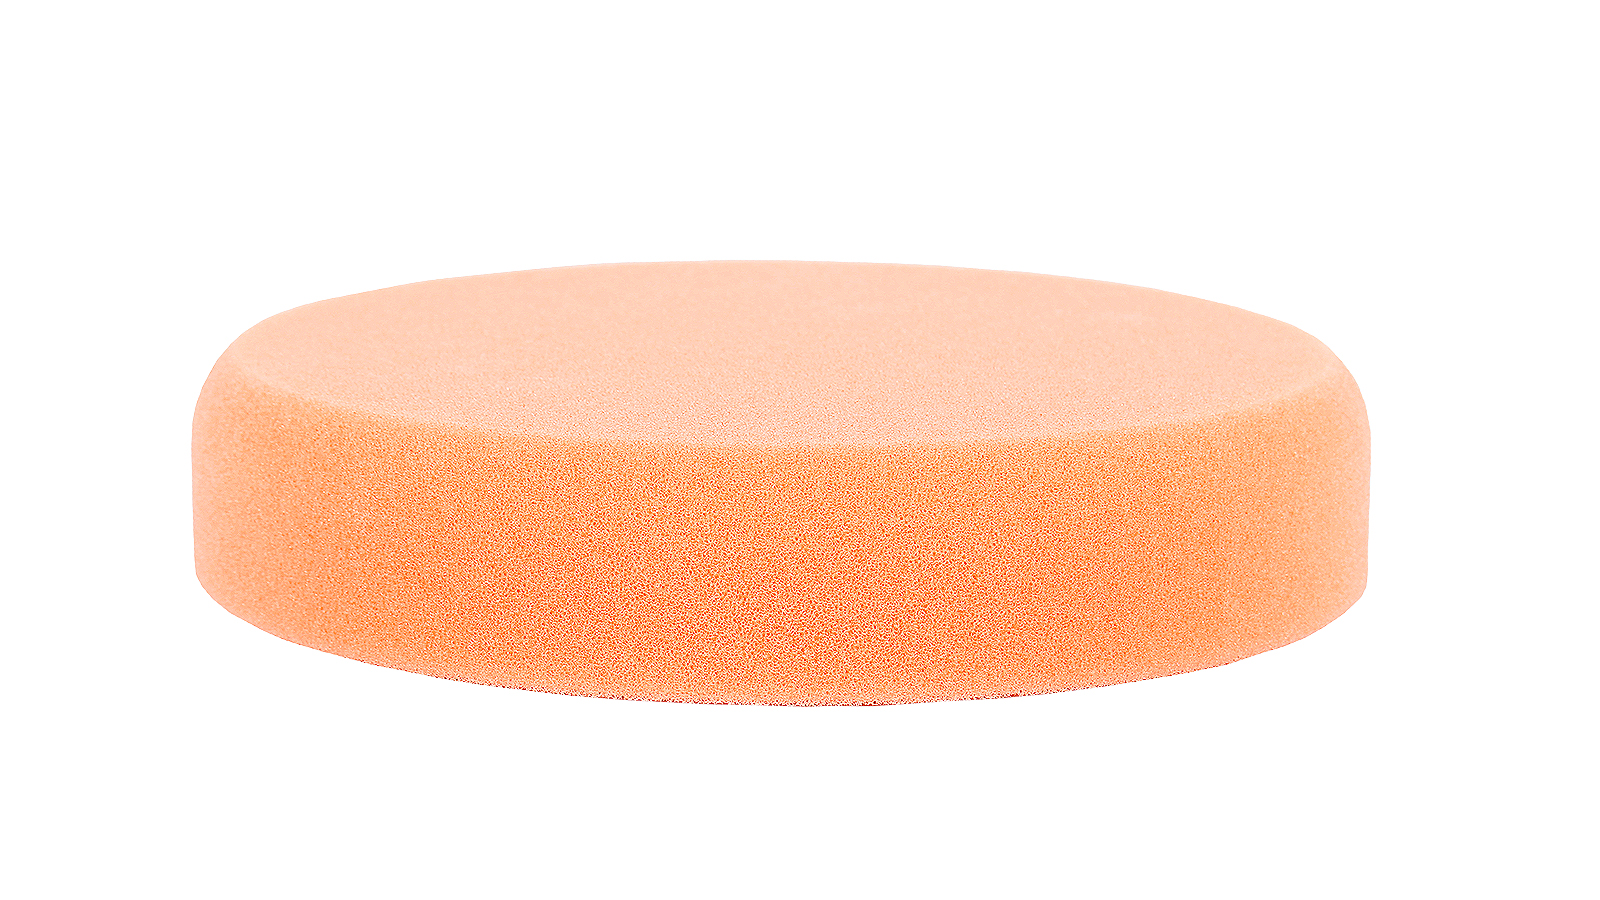 Круг полировальный RoxelPro 150х30 мм оранжевый средней жесткости диск полировальный pro sto на подложке м14 150x50мм оранжевый средней жесткости jh 004 6c